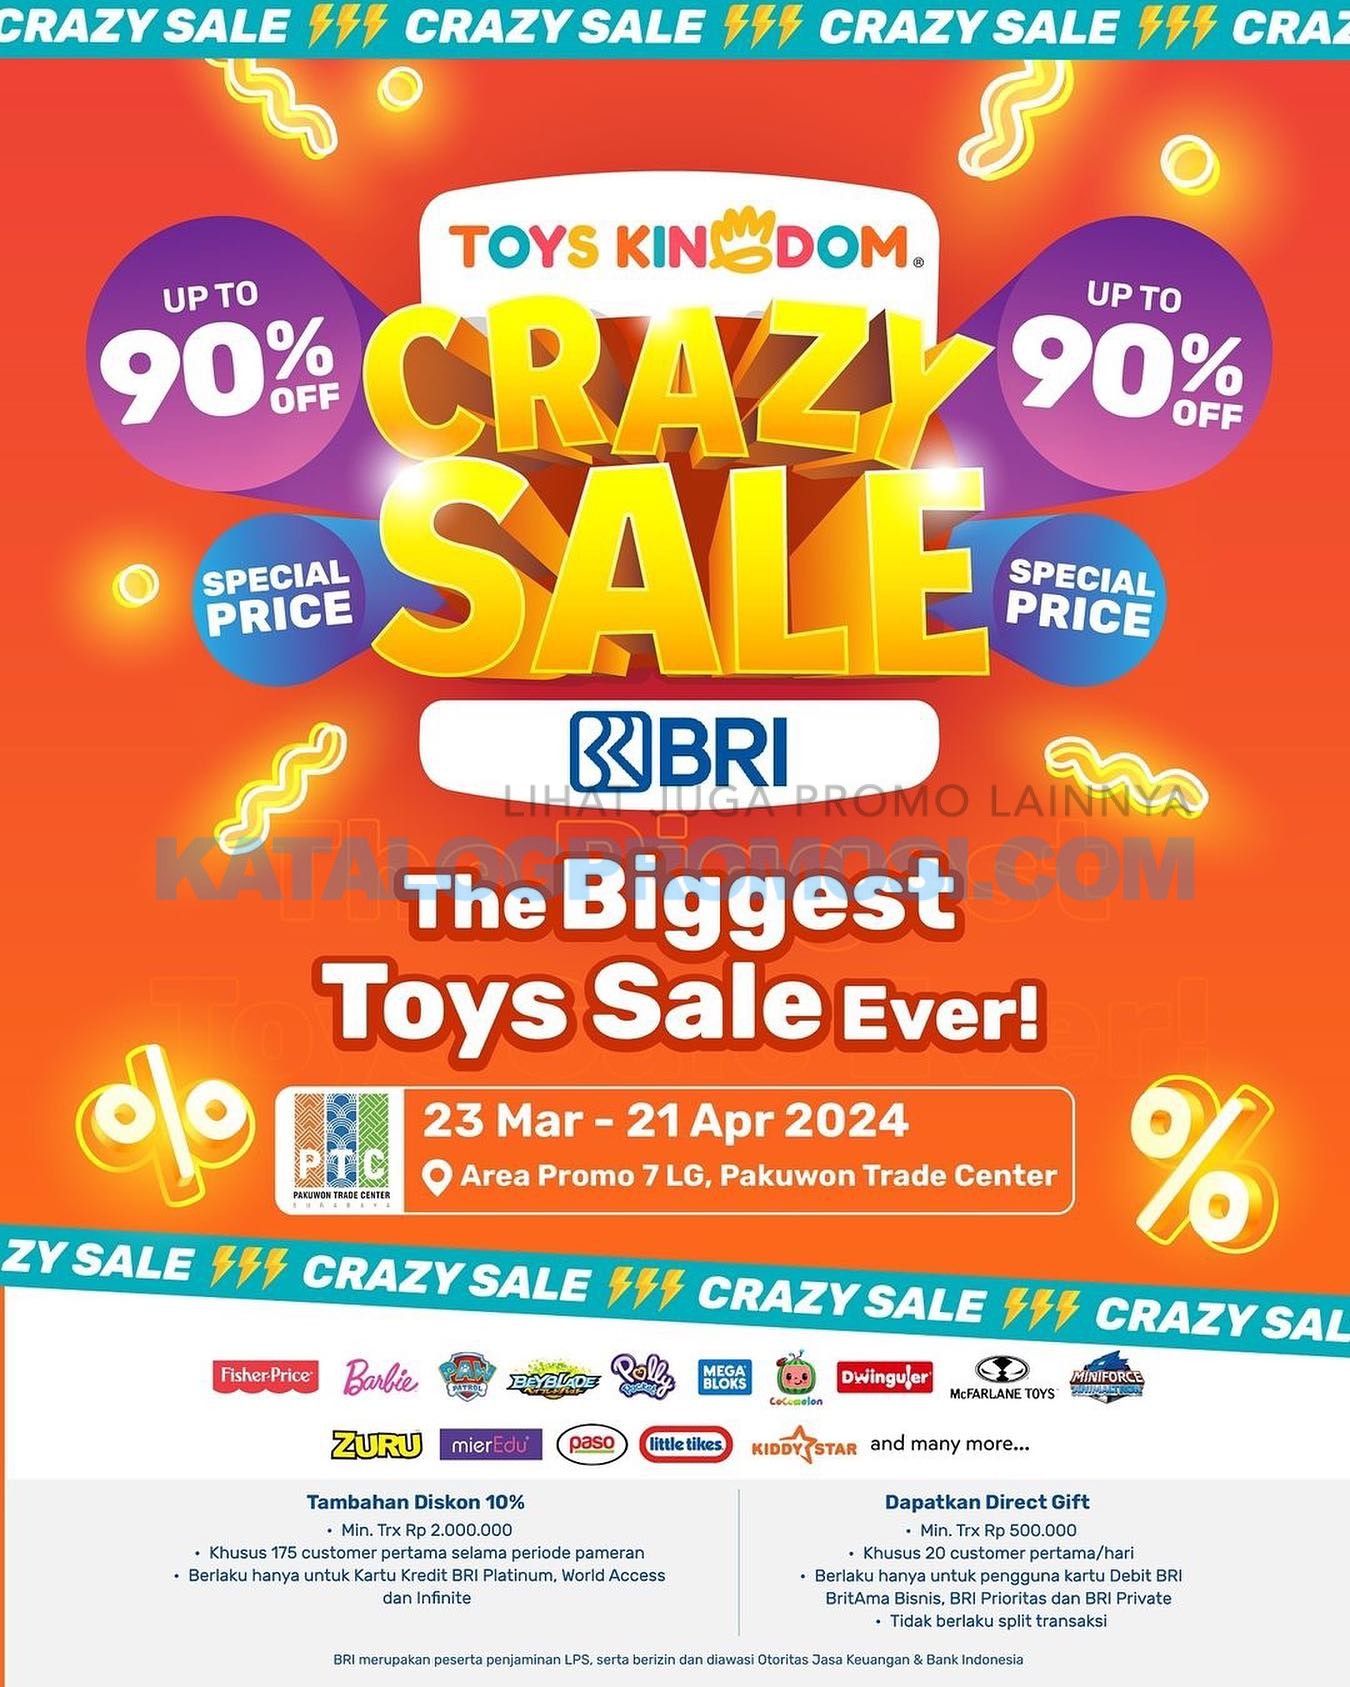 TOYS KINGDOM Crazy Sale di Pakuwon Trade Center Surabaya - DISKON HINGGA 90% hingga tanggal 21 April 2024 saja